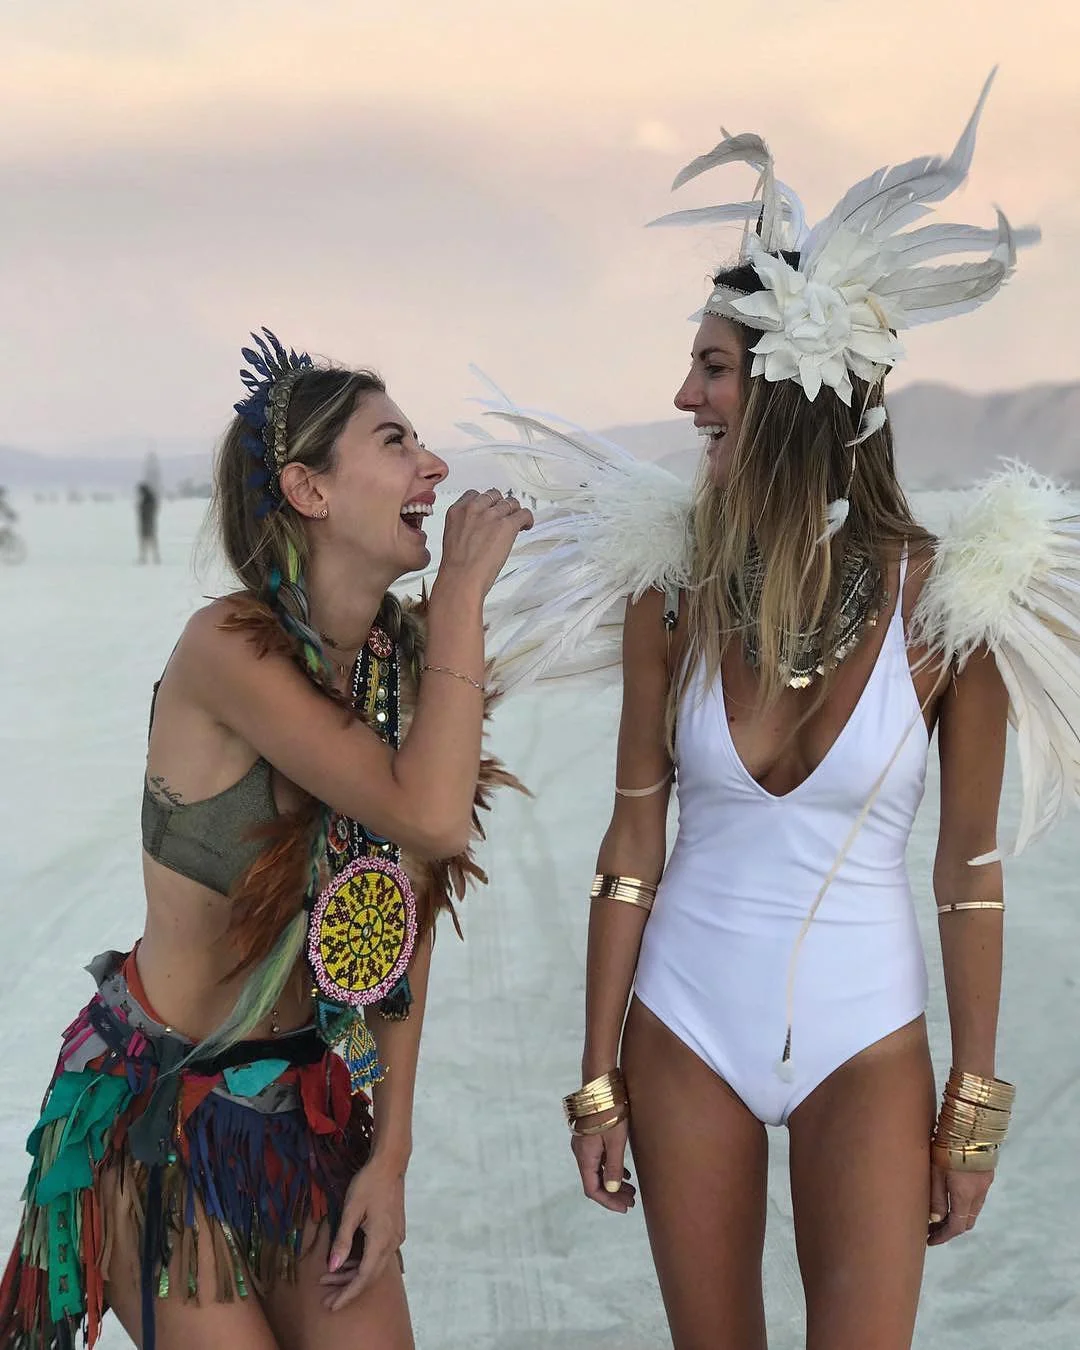 Пилюка, голі тіла та сучасне мистецтво: круті фото з фестивалю Burning Man 2017 - фото 336433